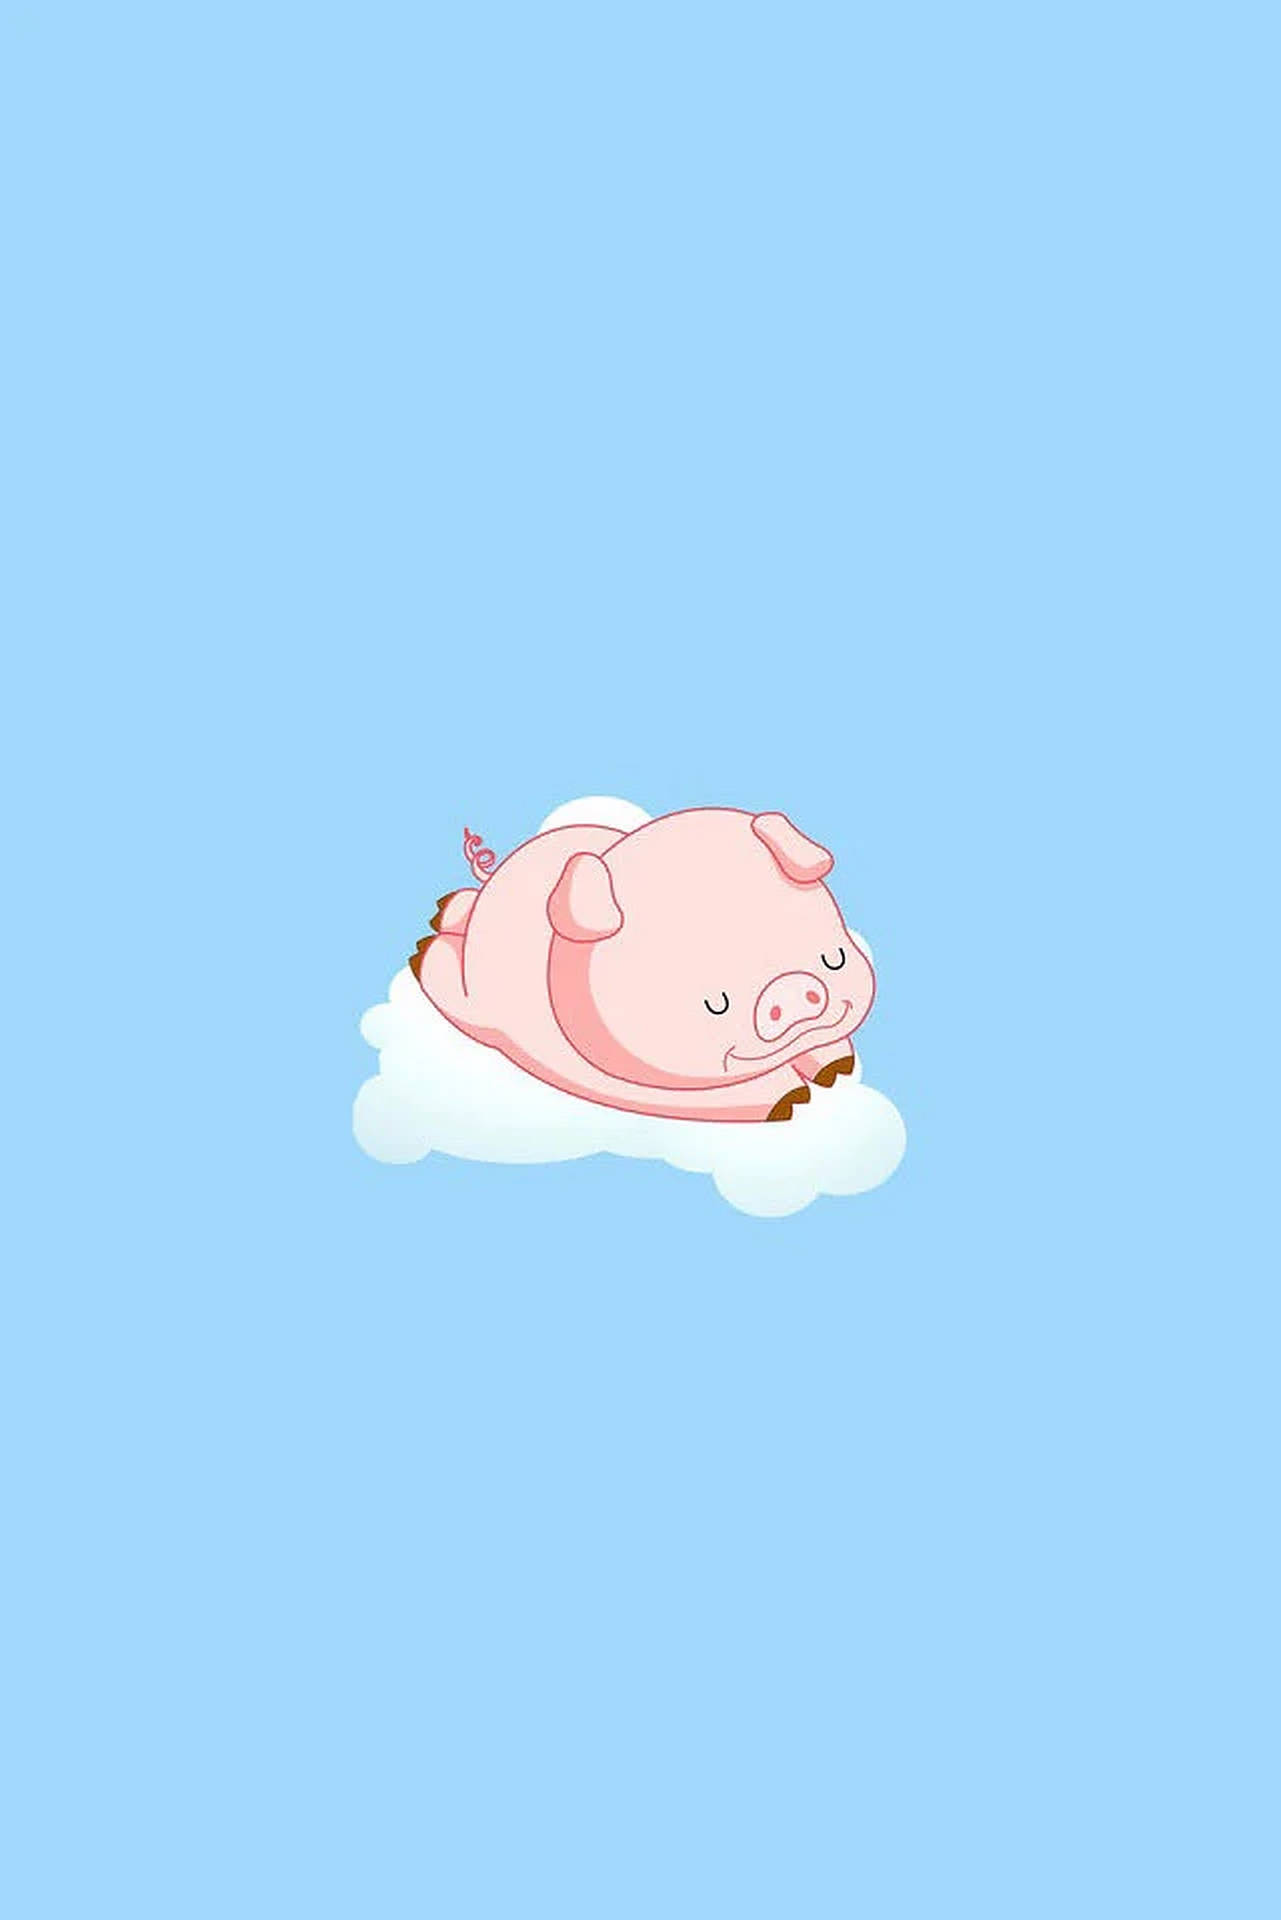 Cute Pig On Cloud Wallpaper